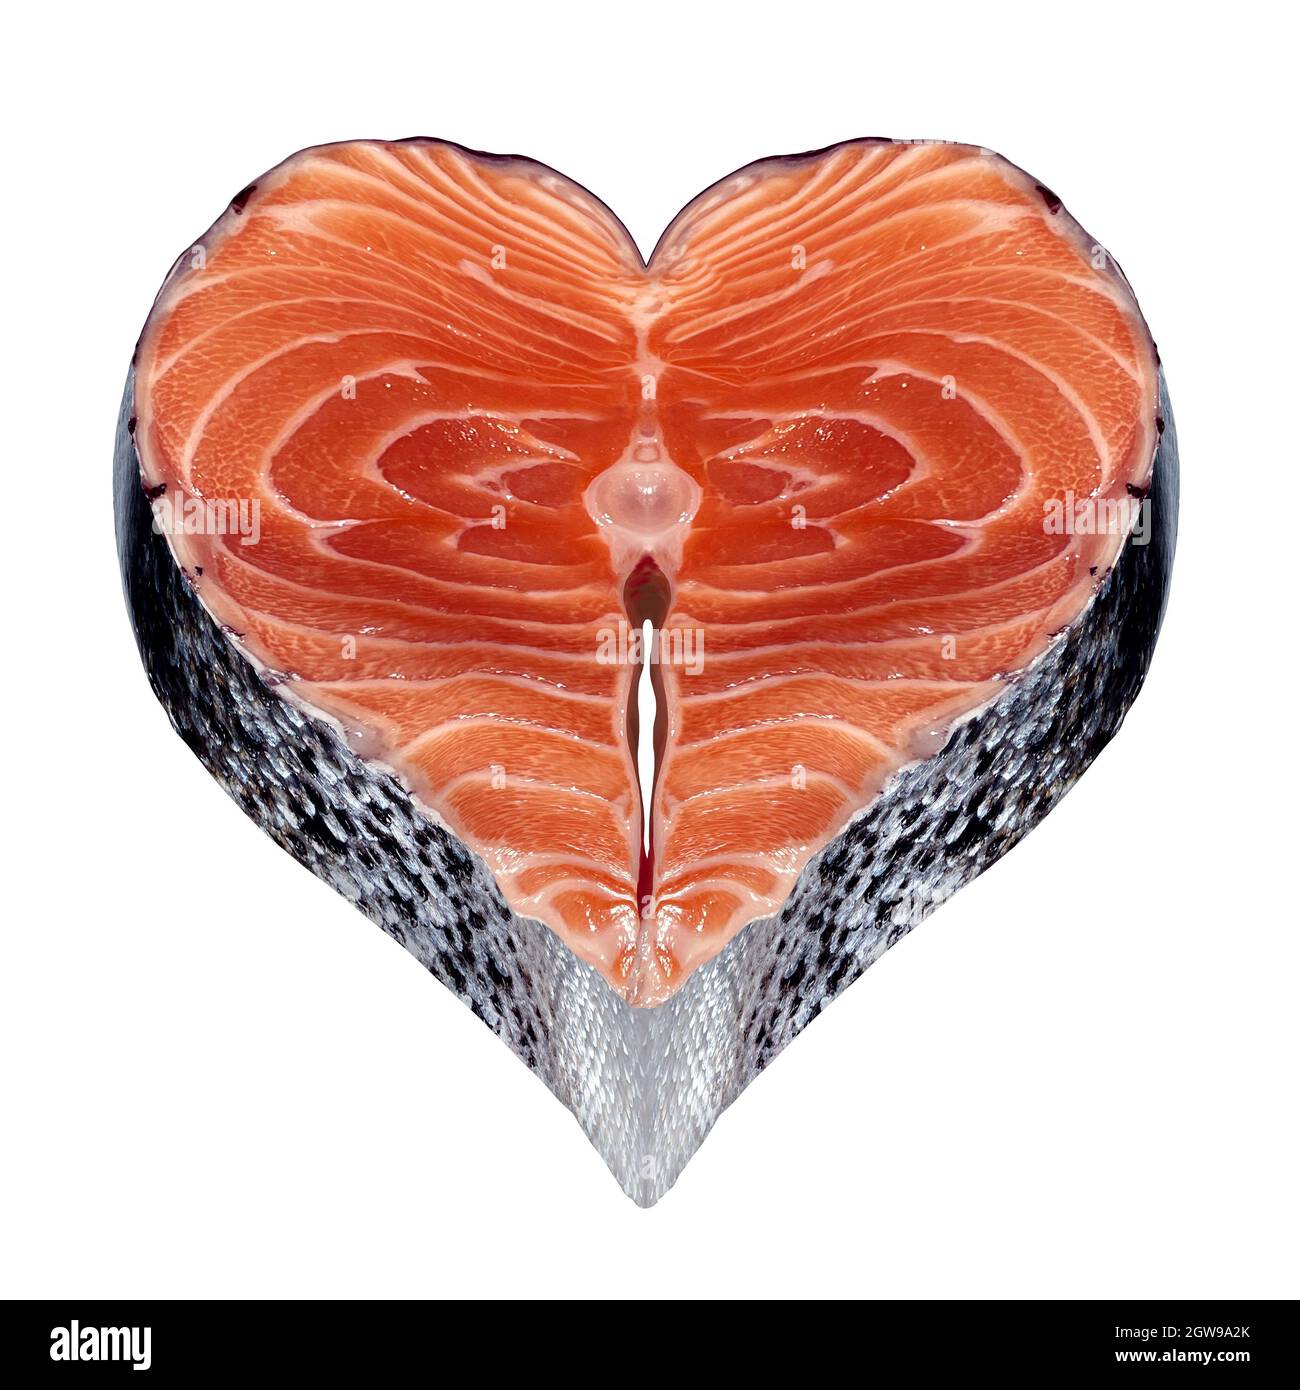 Pescado saludable símbolo como marisco fresco con un filete de salmón en forma de corazón como un icono de la fuente de alimentos saludables omega-3. Foto de stock